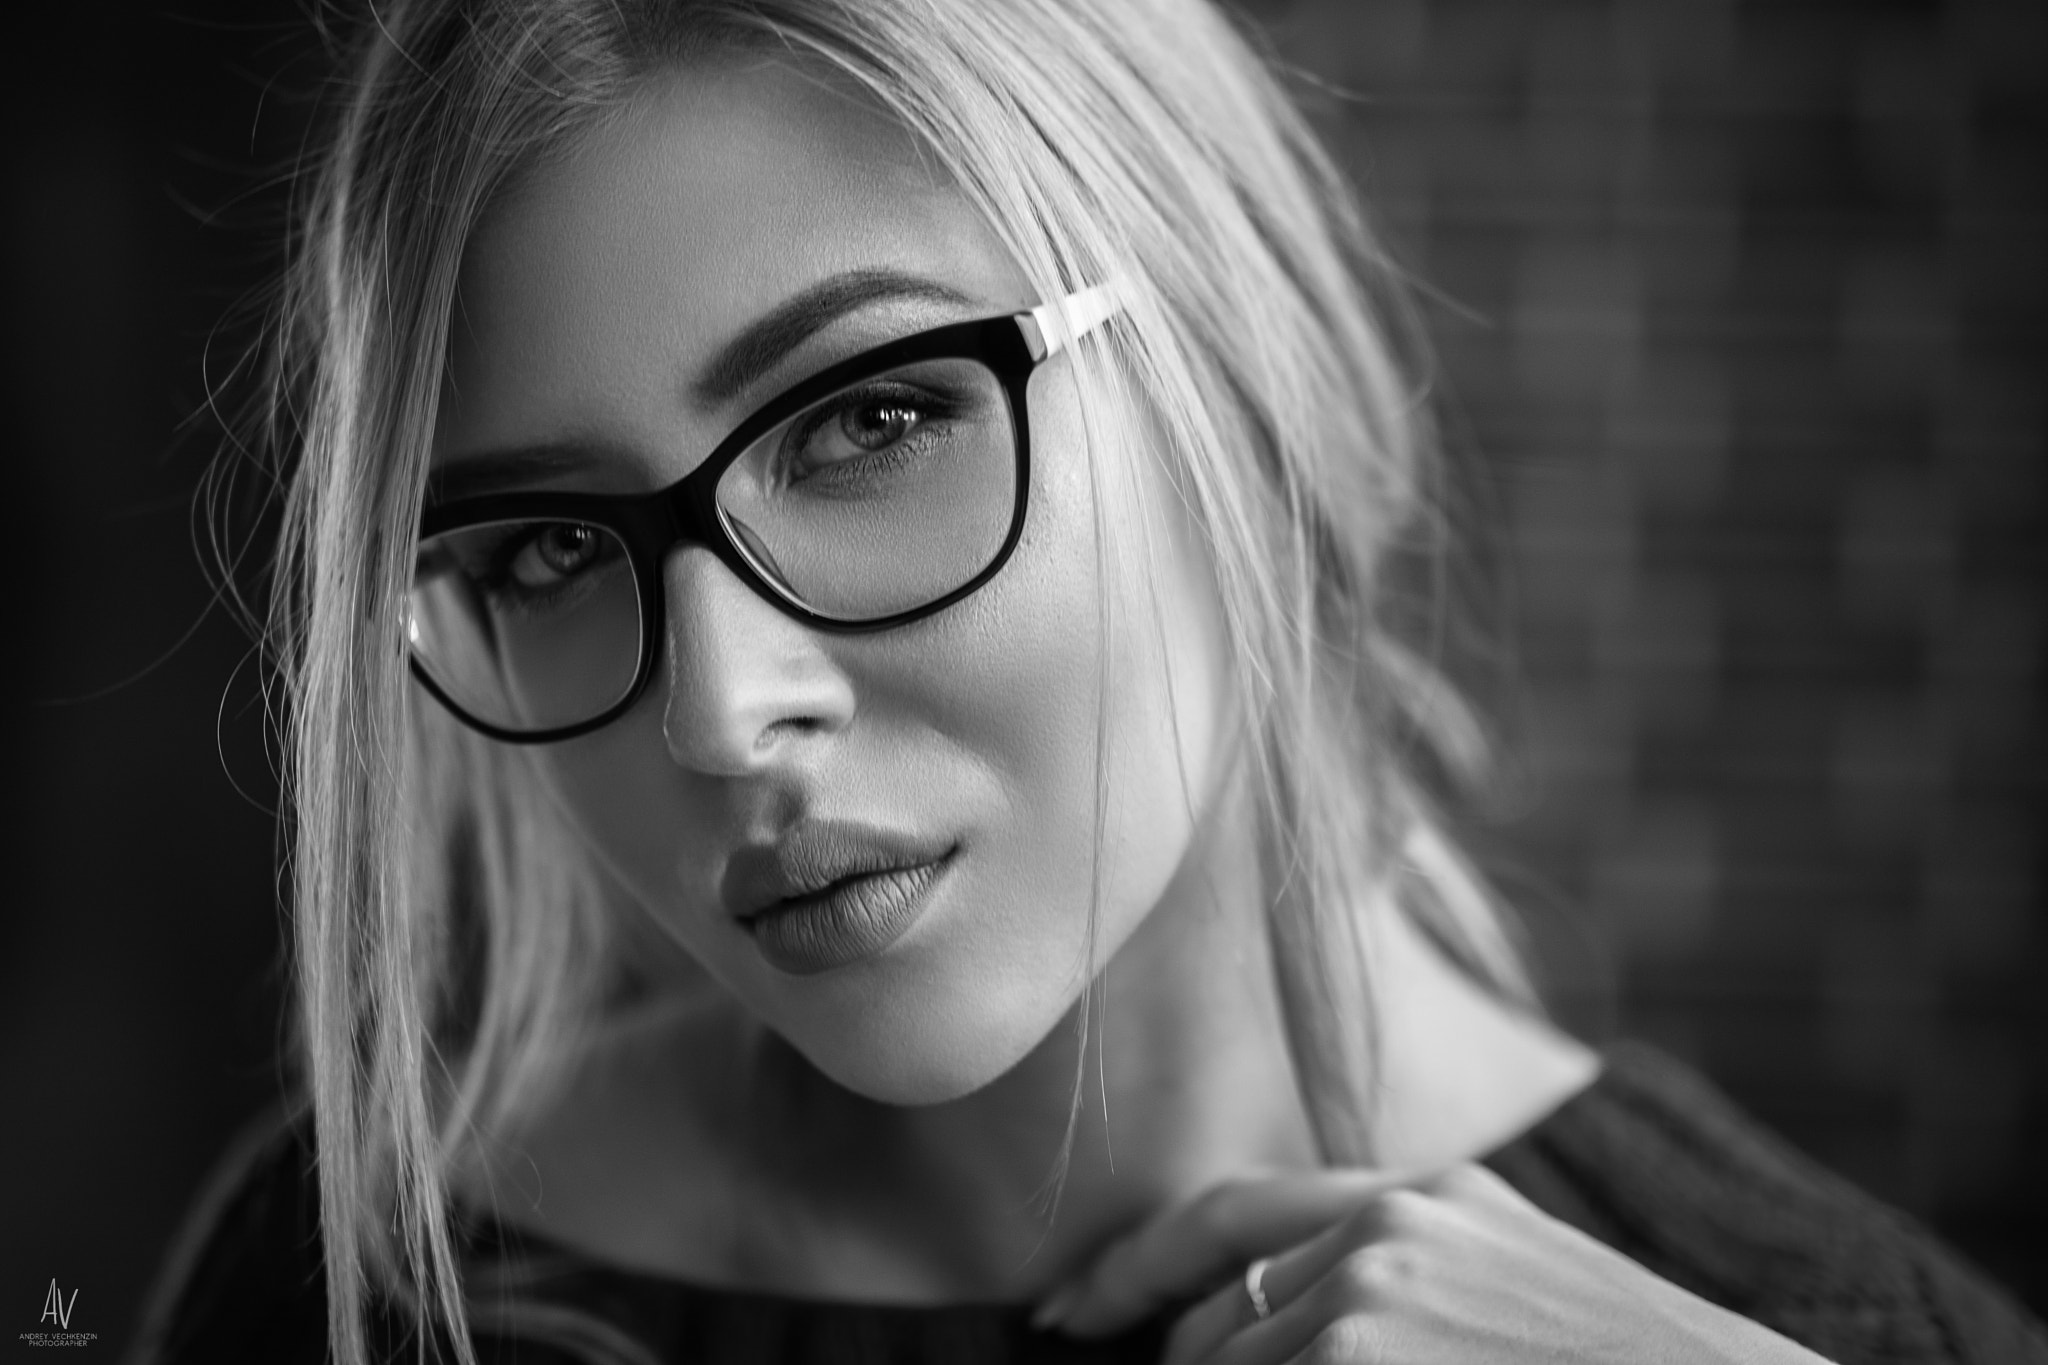 People 2048x1365 women monochrome face portrait women with glasses depth of field closeup watermarked Andrey Vechkenzin